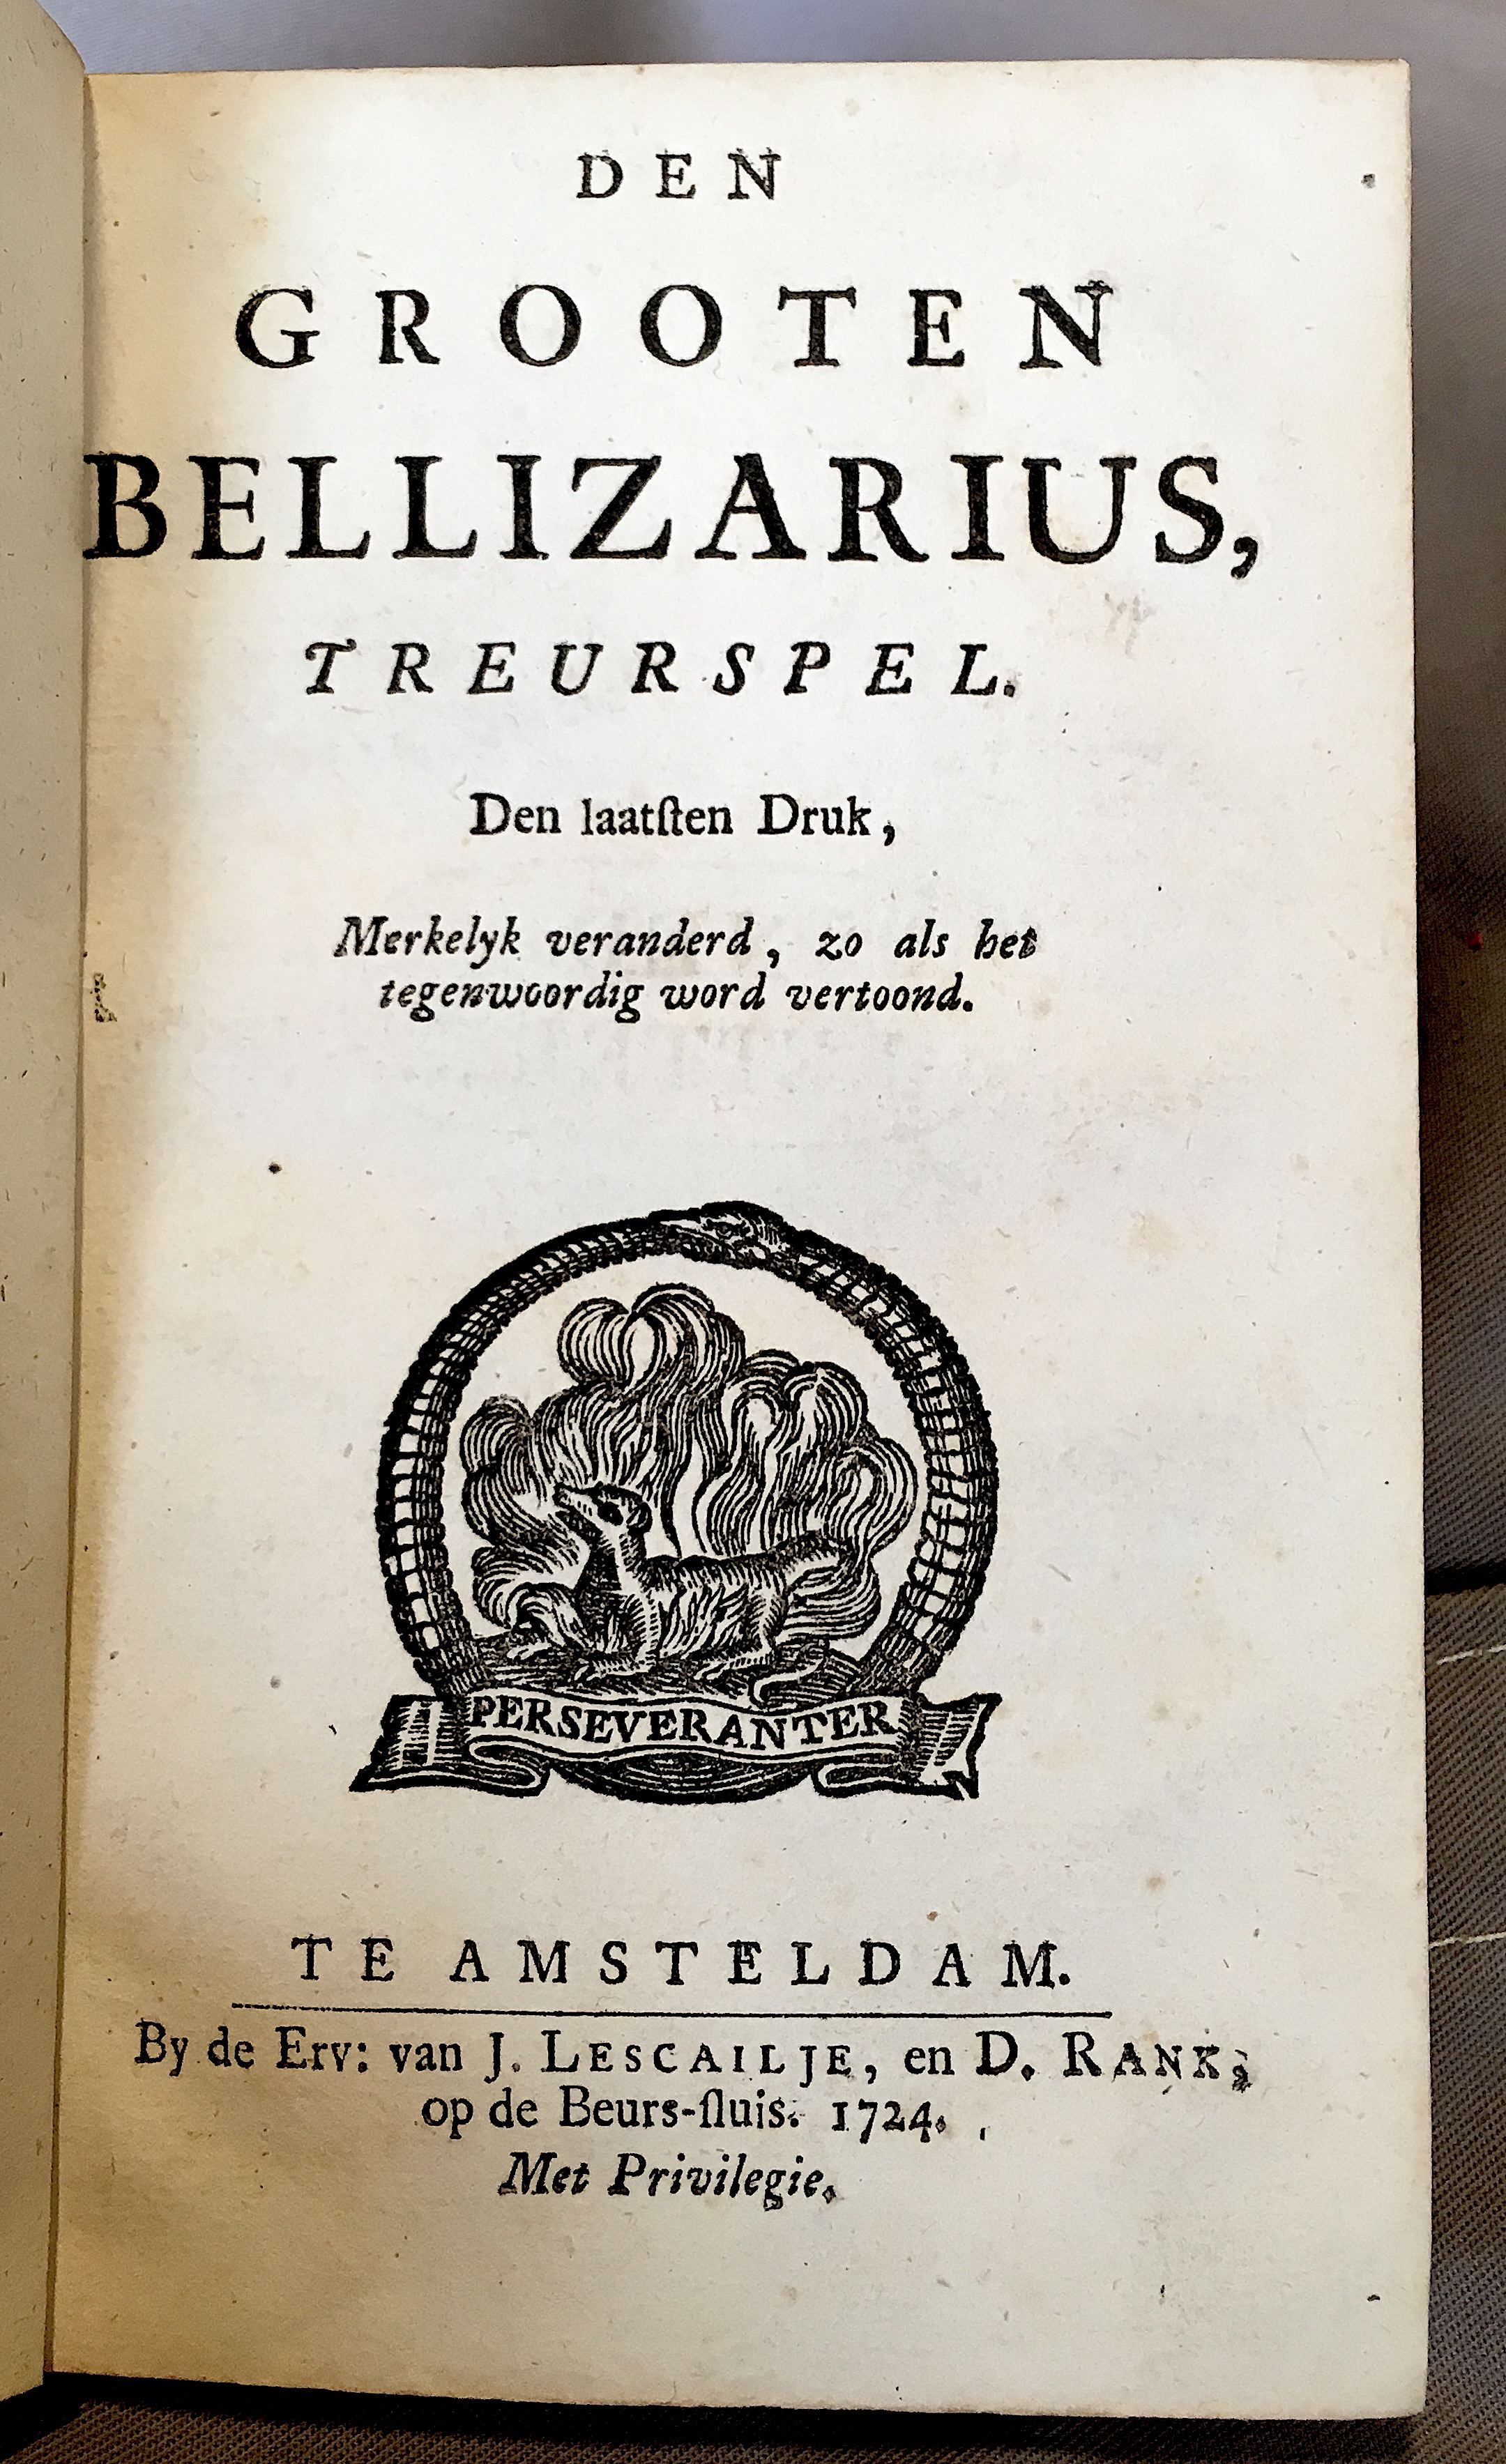 GrieckBellizarius1724p01